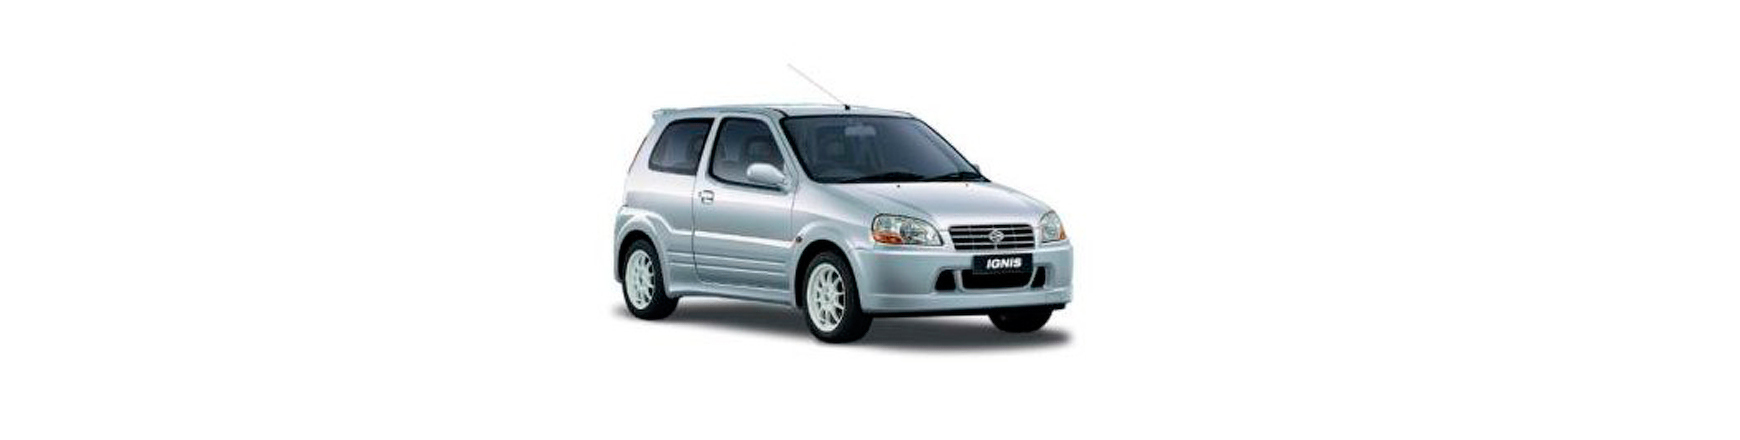 Piezas y Recambios para Suzuki Ignis de 2003 a 2007 | Veramauto.es